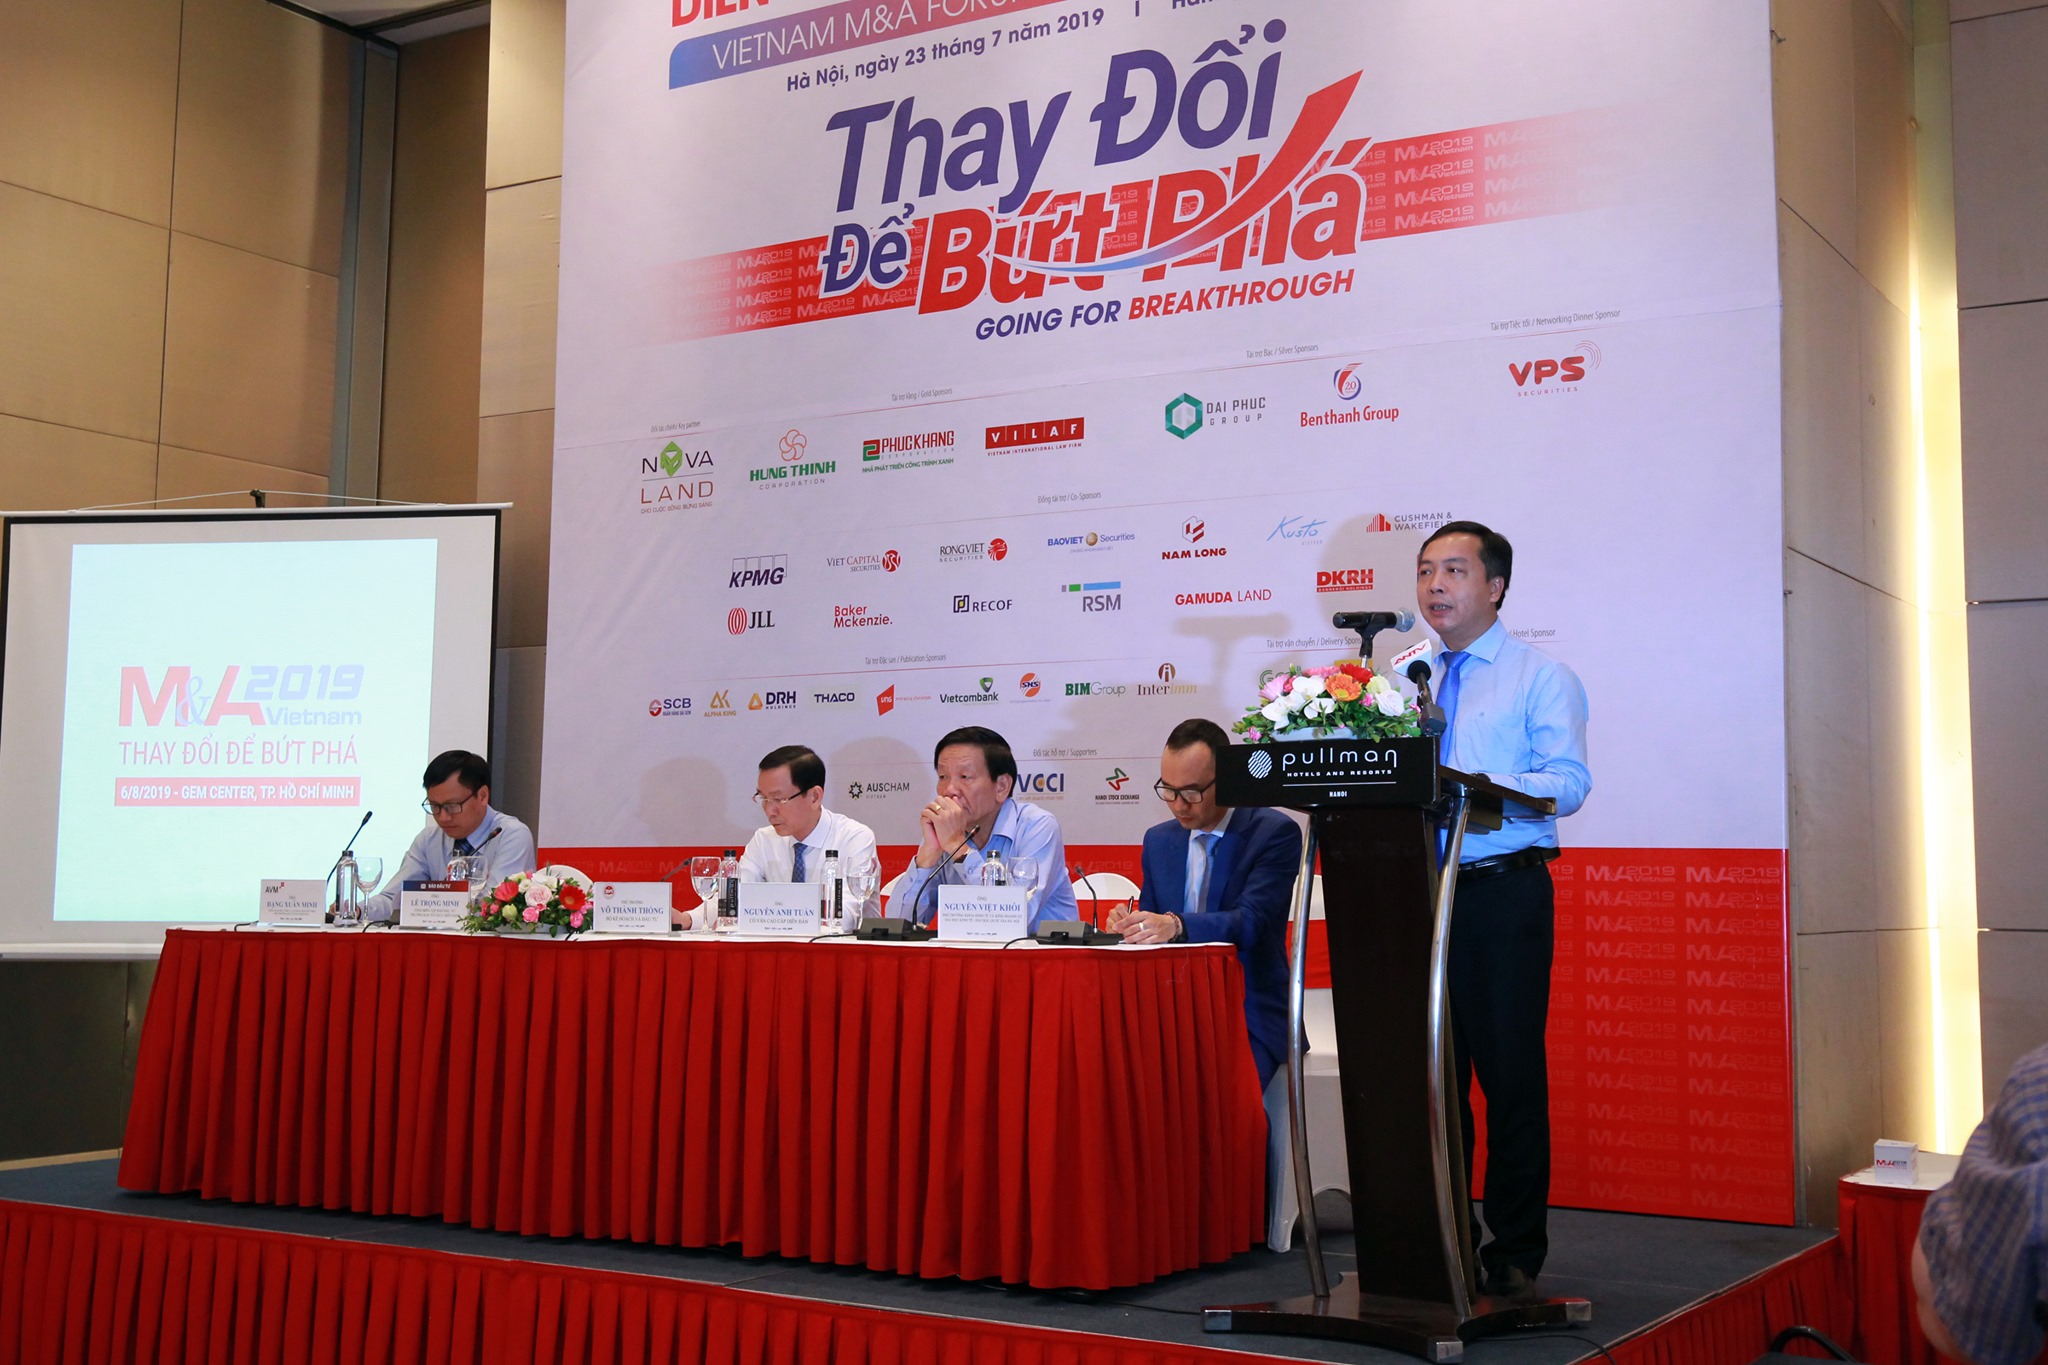 Có 2 thương vụ thoái vốn đáng chú ý là An Quý Hưng – Vinaconex, thương vụ lớn nhất trong diện nhà nước thoái vốn và Saigon Coop – Auchan, thương vụ một doanh nghiệp Việt Nam mua lại chuỗi siêu thị do nhà đầu tư nước ngoài thoái vốn và rút khỏi thị trường Việt Nam.